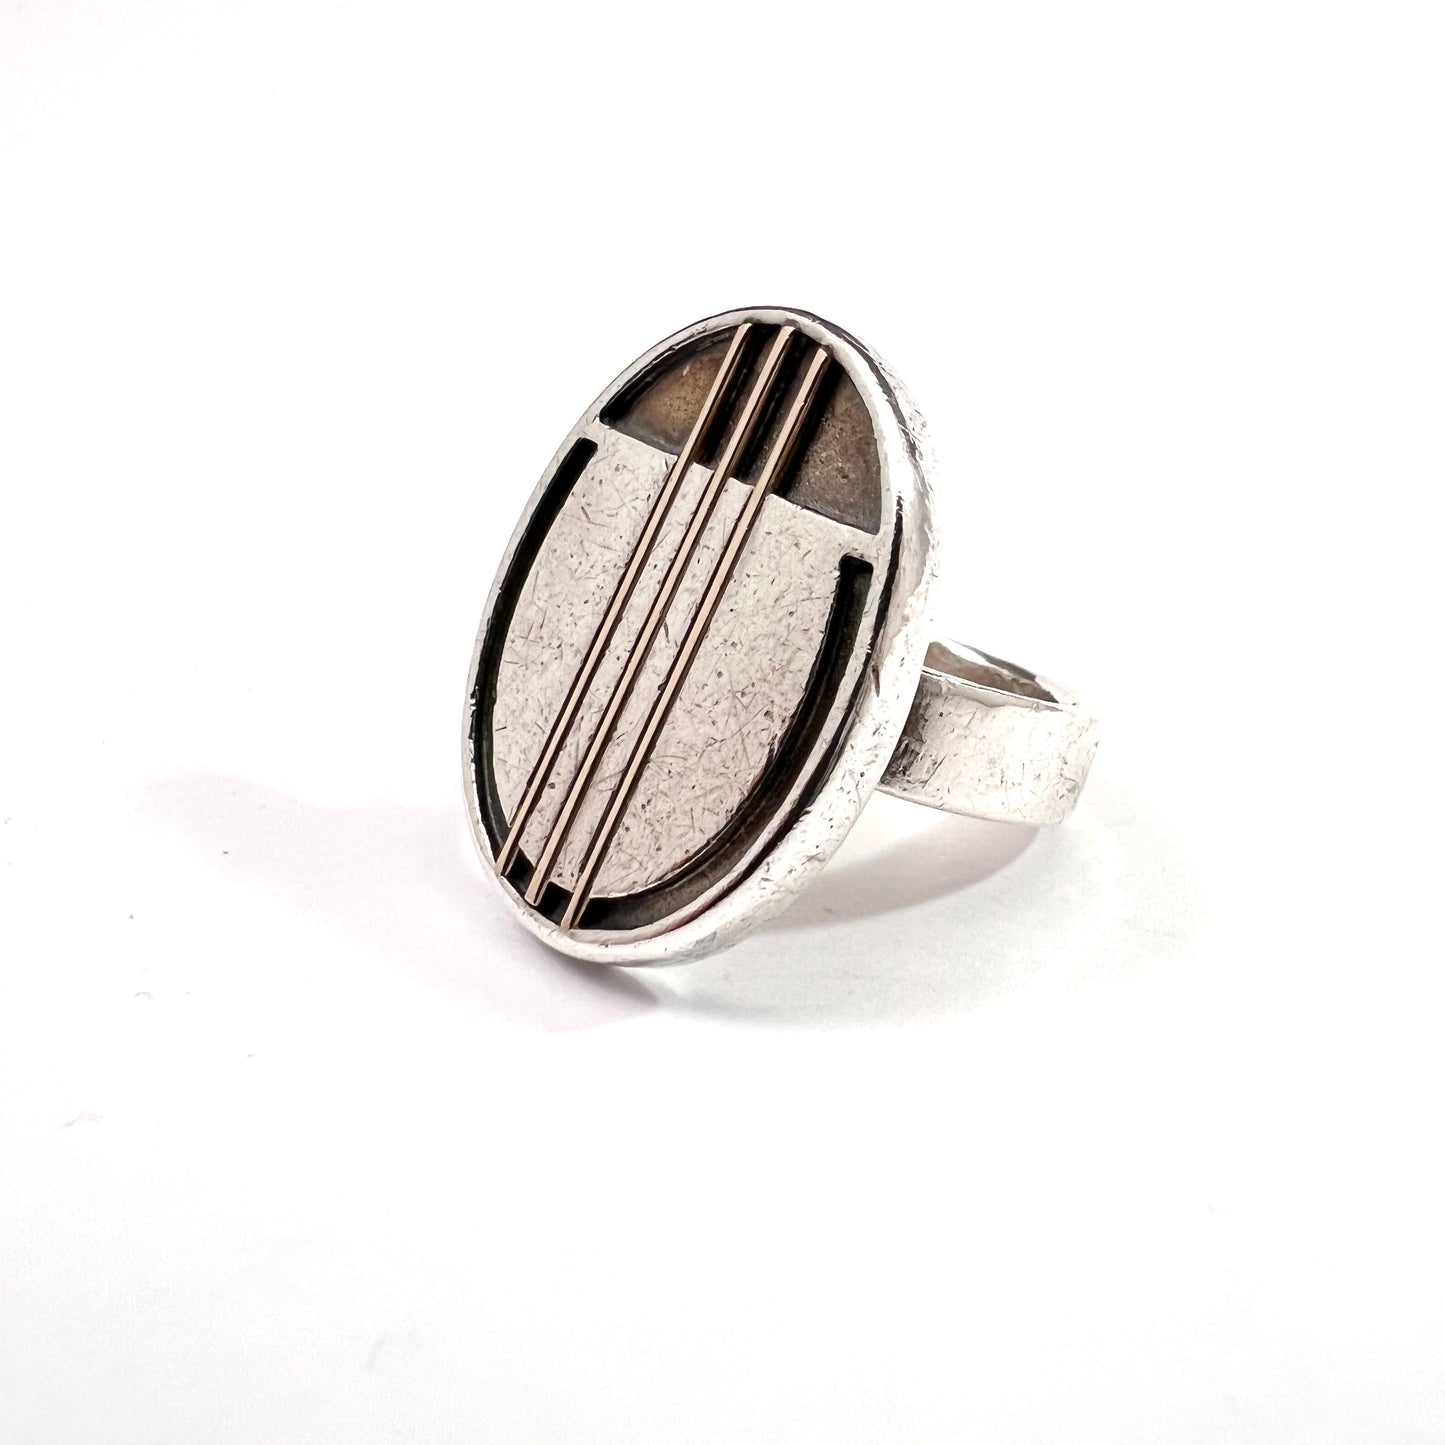 Carl L Cohr, Denmark c 1960s. Vintage Mondernist Sterling Silver Ring.